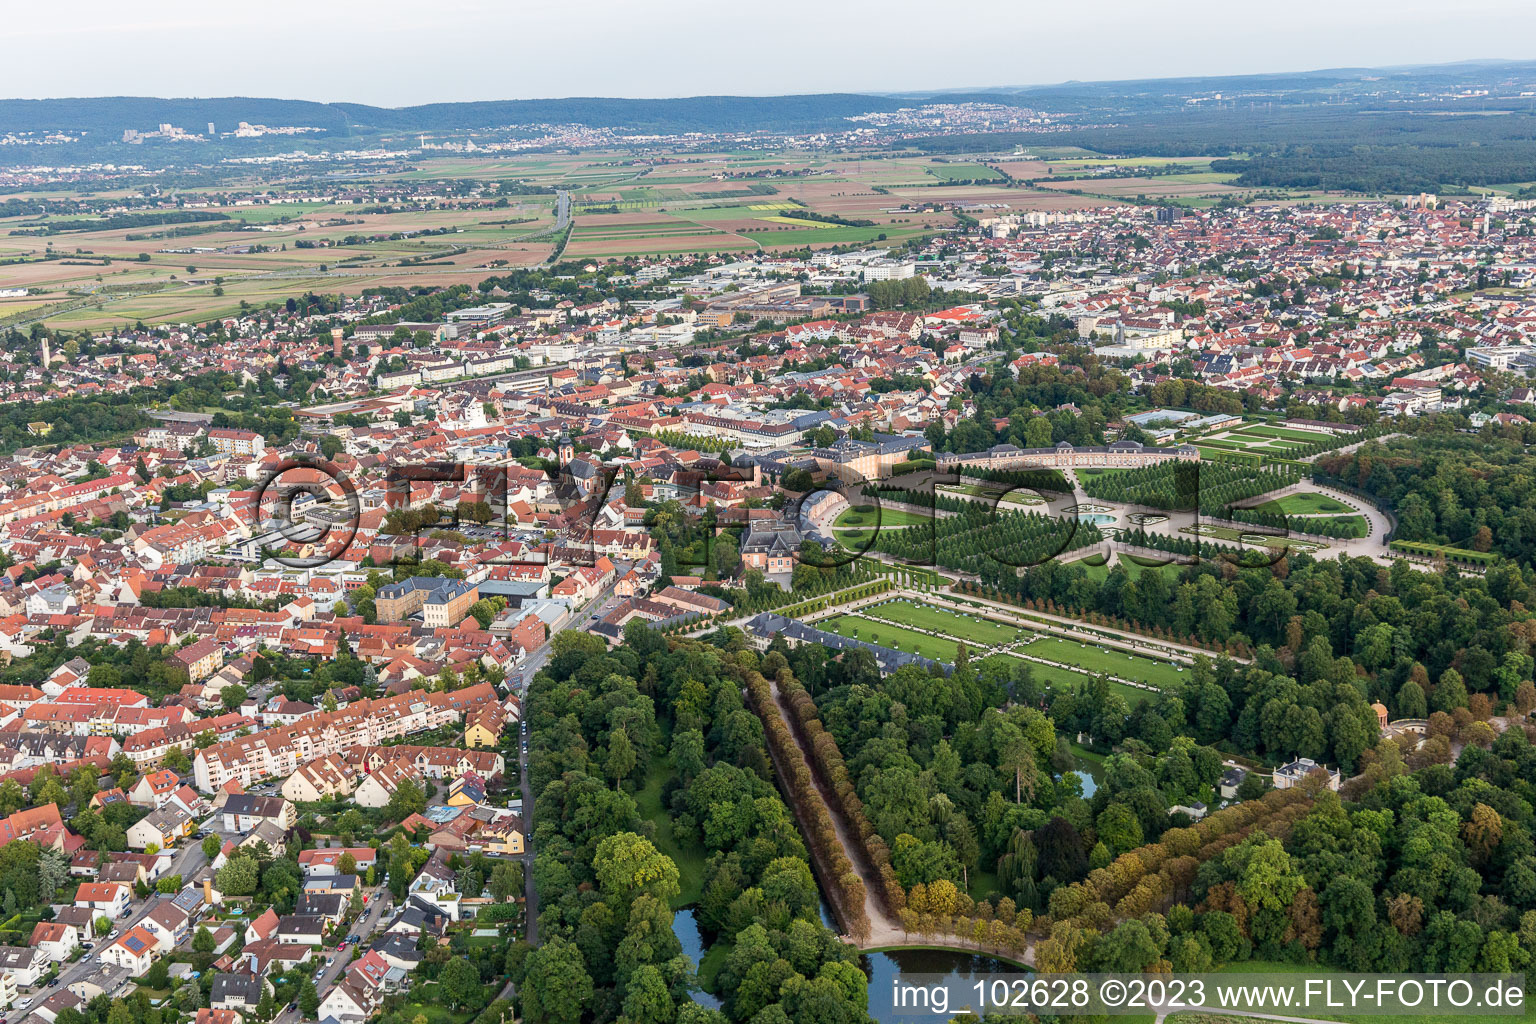 Luftbild von Schwetzingen, Schloßpark im Bundesland Baden-Württemberg, Deutschland